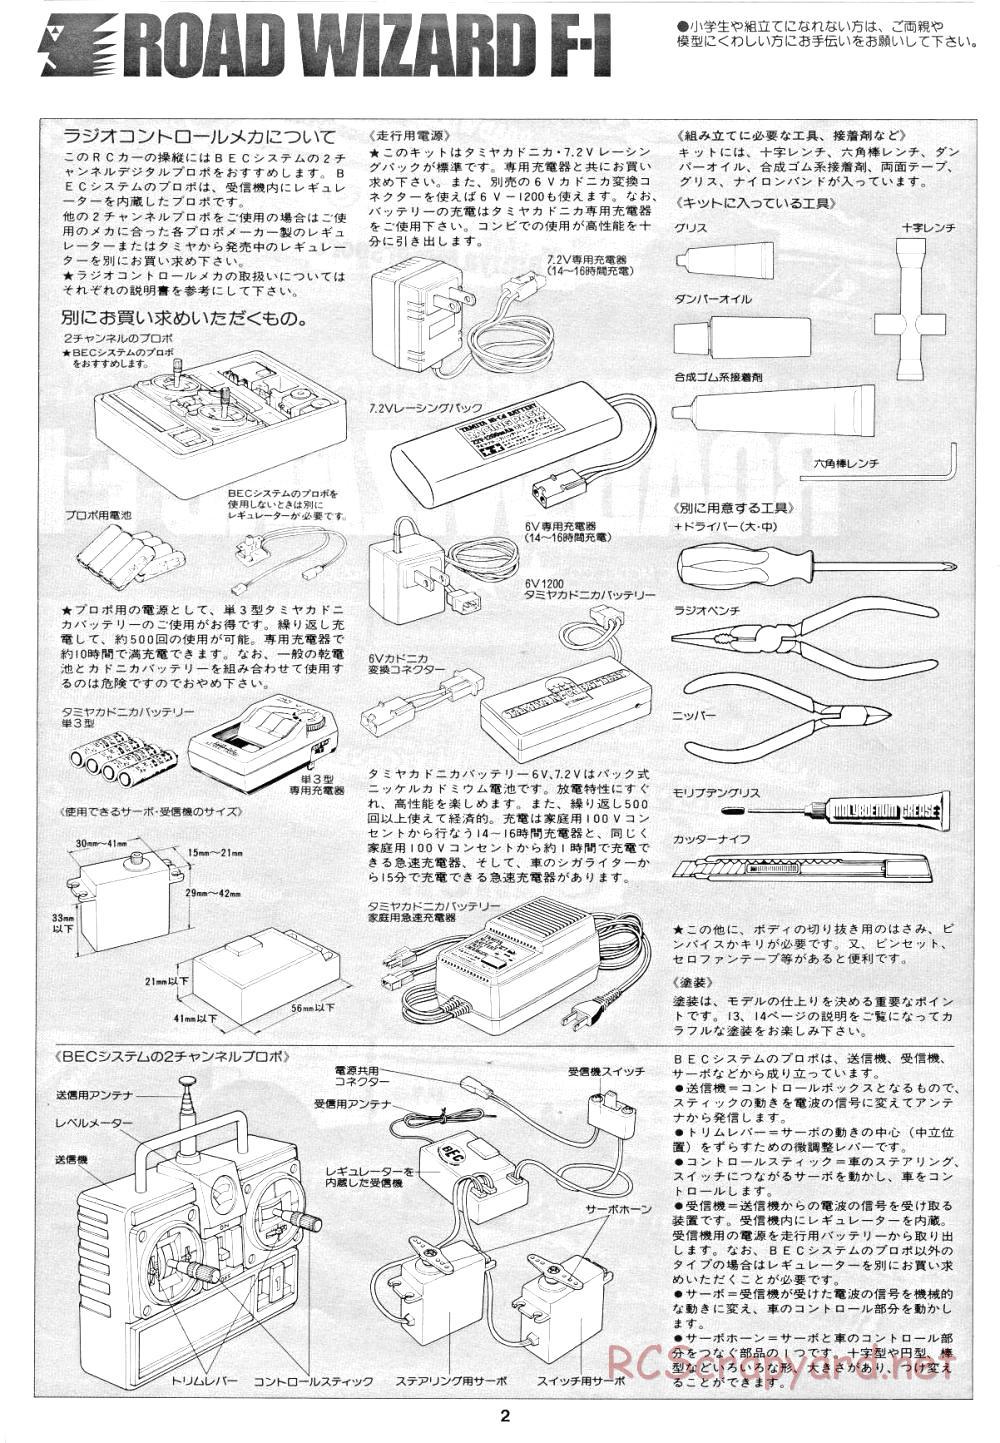 Tamiya - Road Wizard F-1 - 58053 - Manual - Page 2